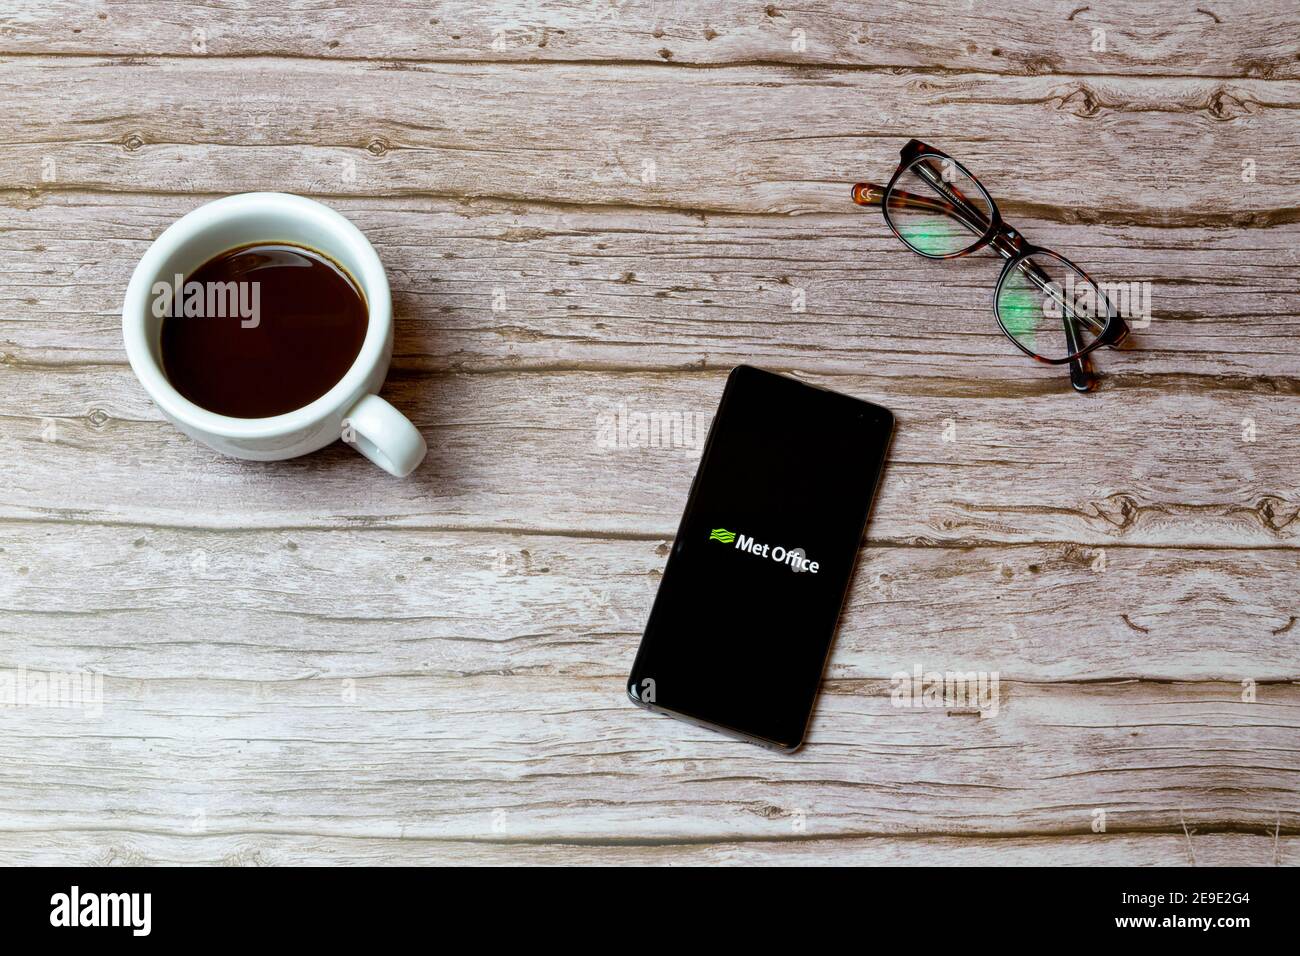 Ein Mobiltelefon oder Mobiltelefon auf einem Tisch Oder Schreibtisch mit der Met Office Wetter App geöffnet und Ein Kaffee daneben Stockfoto